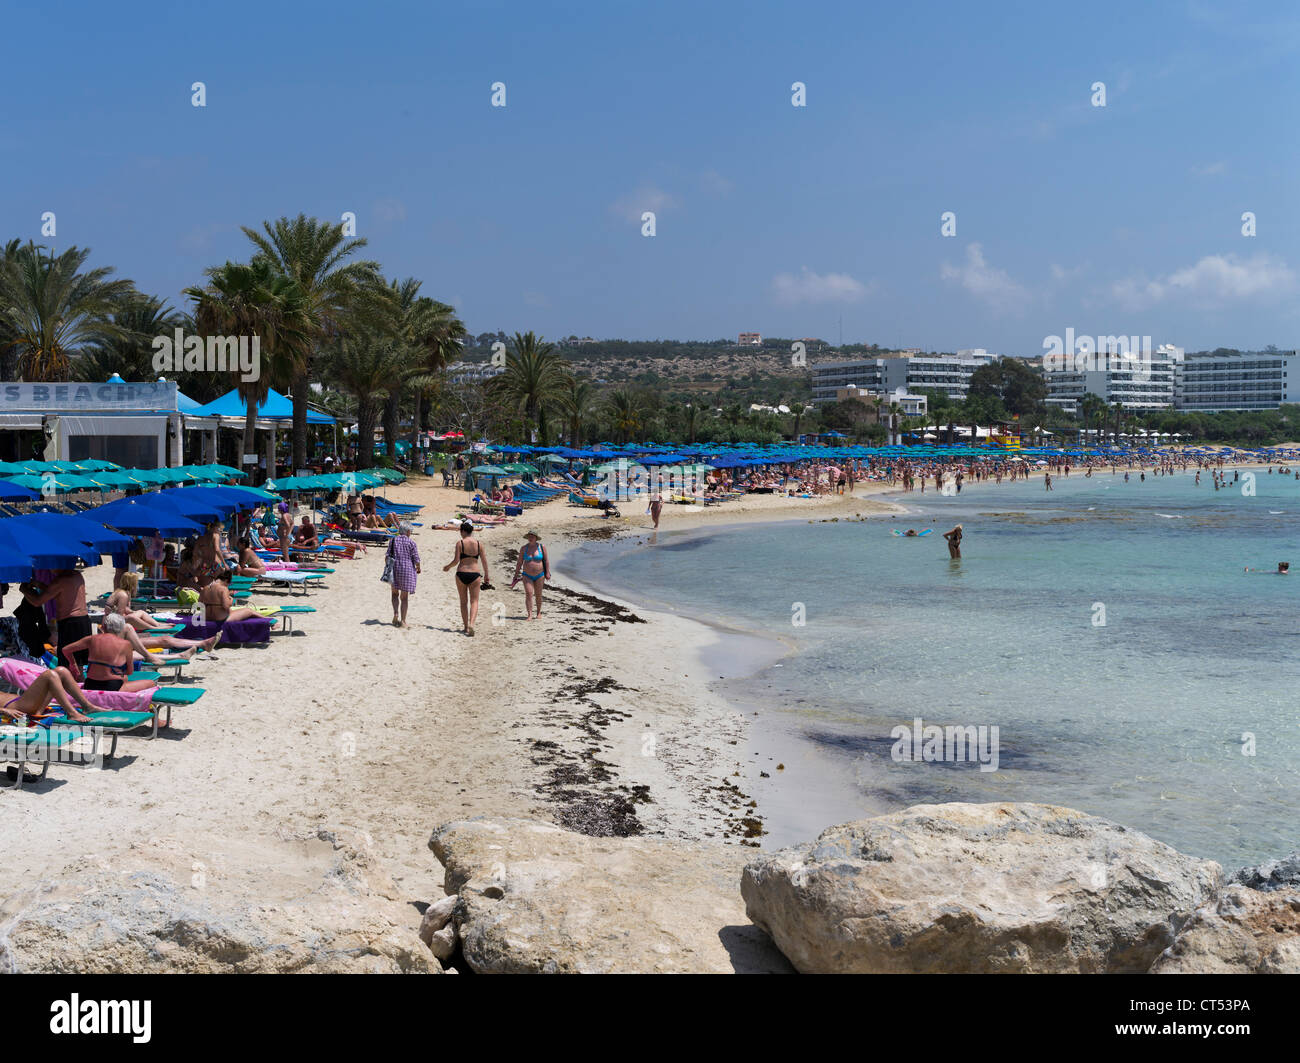 dh Liminaki spiaggia AYIA NAPA CIPRO ombrelloni blu fodera bianco spiaggia di sabbia bagnanti turistici e alberghi a sud Foto Stock